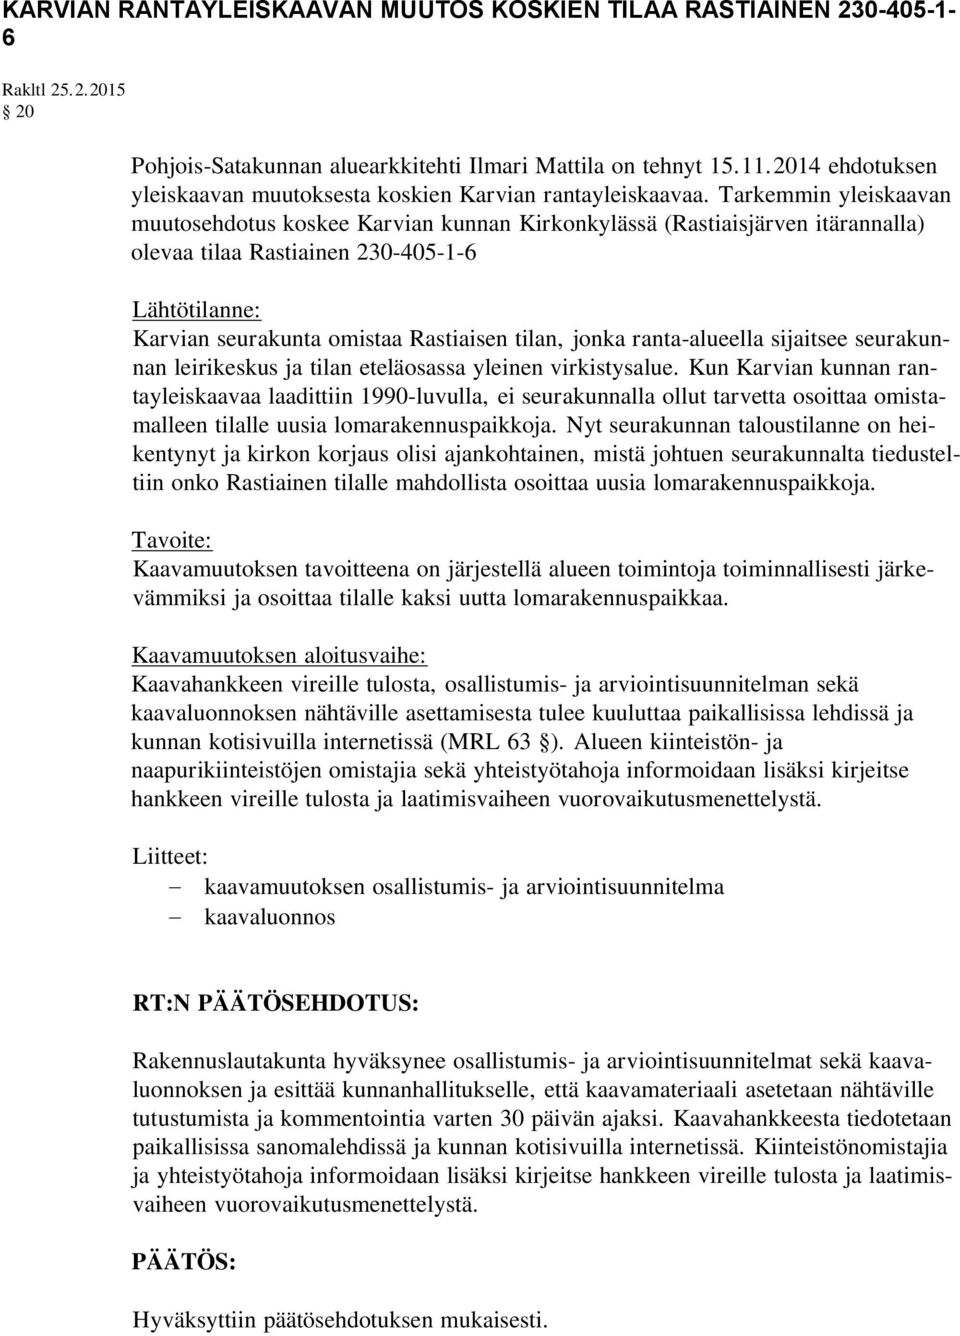 Tarkemmin yleiskaavan muutosehdotus koskee Karvian kunnan Kirkonkylässä (Rastiaisjärven itärannalla) olevaa tilaa Rastiainen 230-405-1-6 Lähtötilanne: Karvian seurakunta omistaa Rastiaisen tilan,